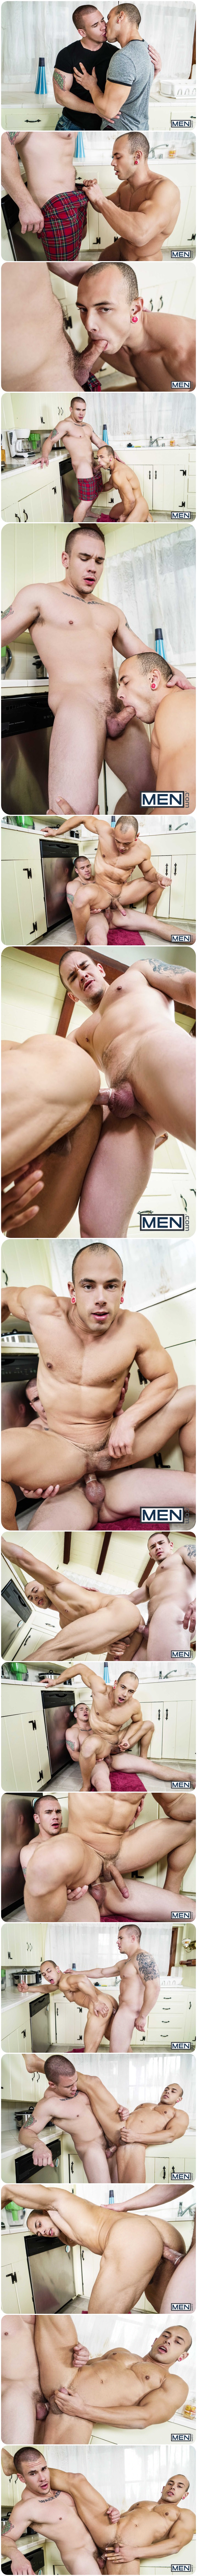 Men.com, Str8 To Gay, Leon Lewis, Adam Bryant